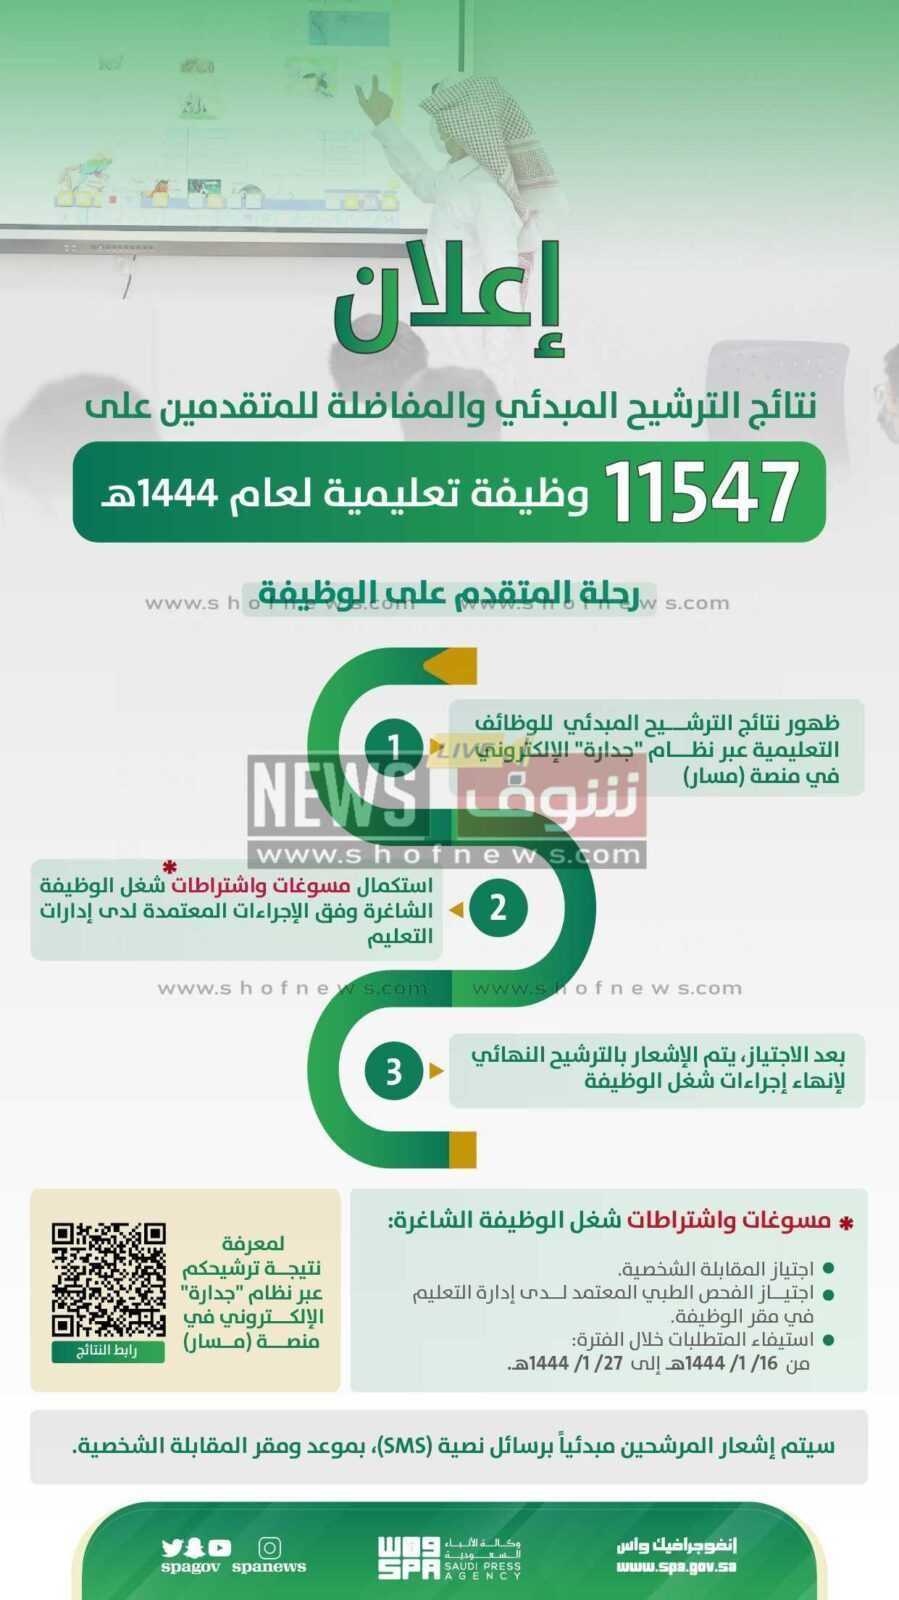  أسماء المقبولين في وظائف جدارة التعليمية 1444 - 1445 بحسب إعلان وزارة التعليم السعودية القبول المبدئي